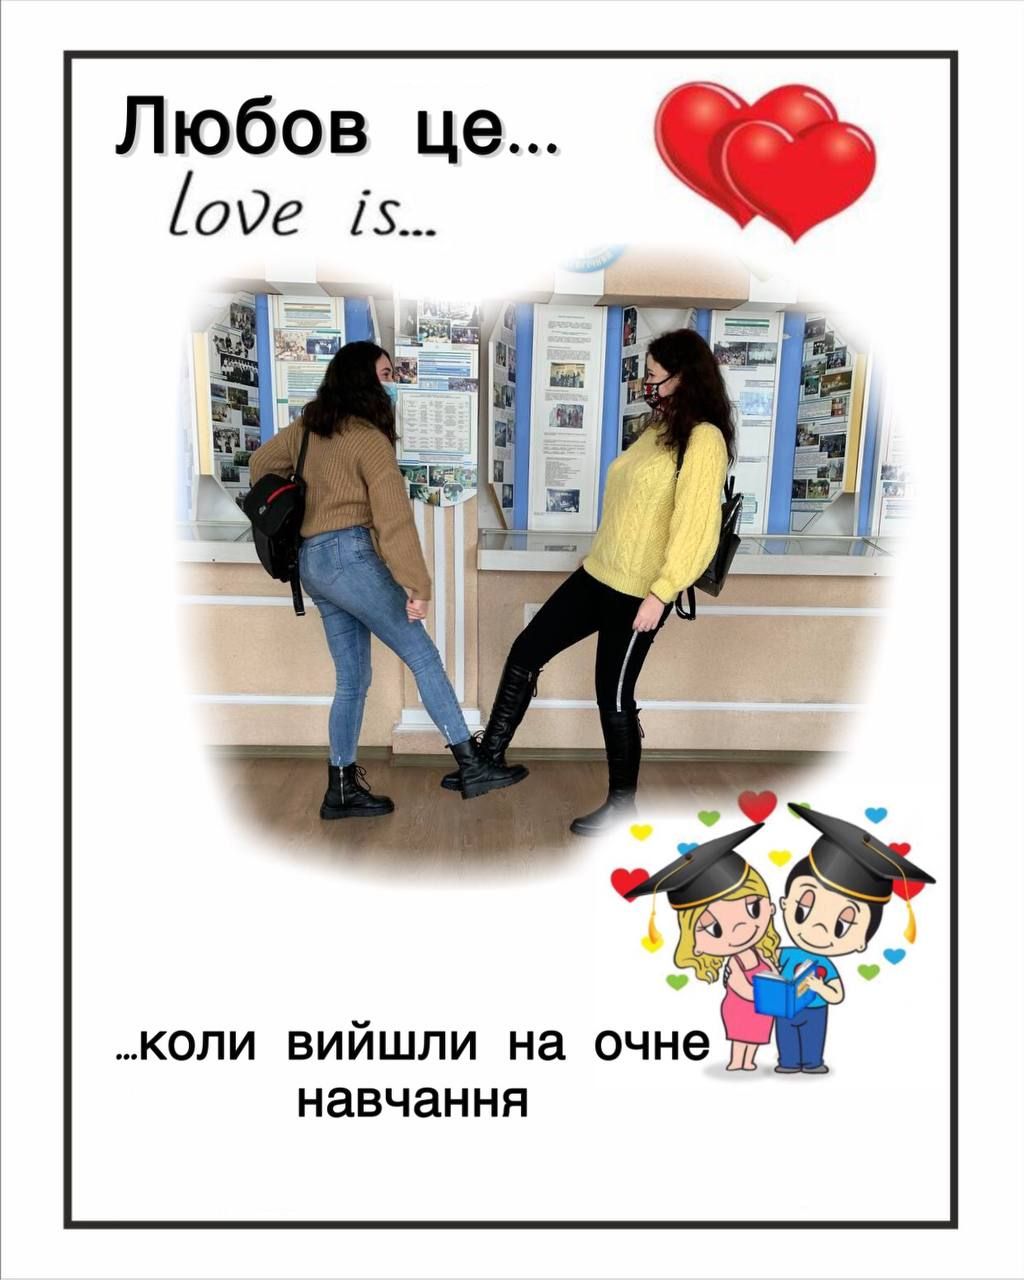 Love is... Факультет педагогіки і психології ТНПУ вітає із Днем усіх закоханих!